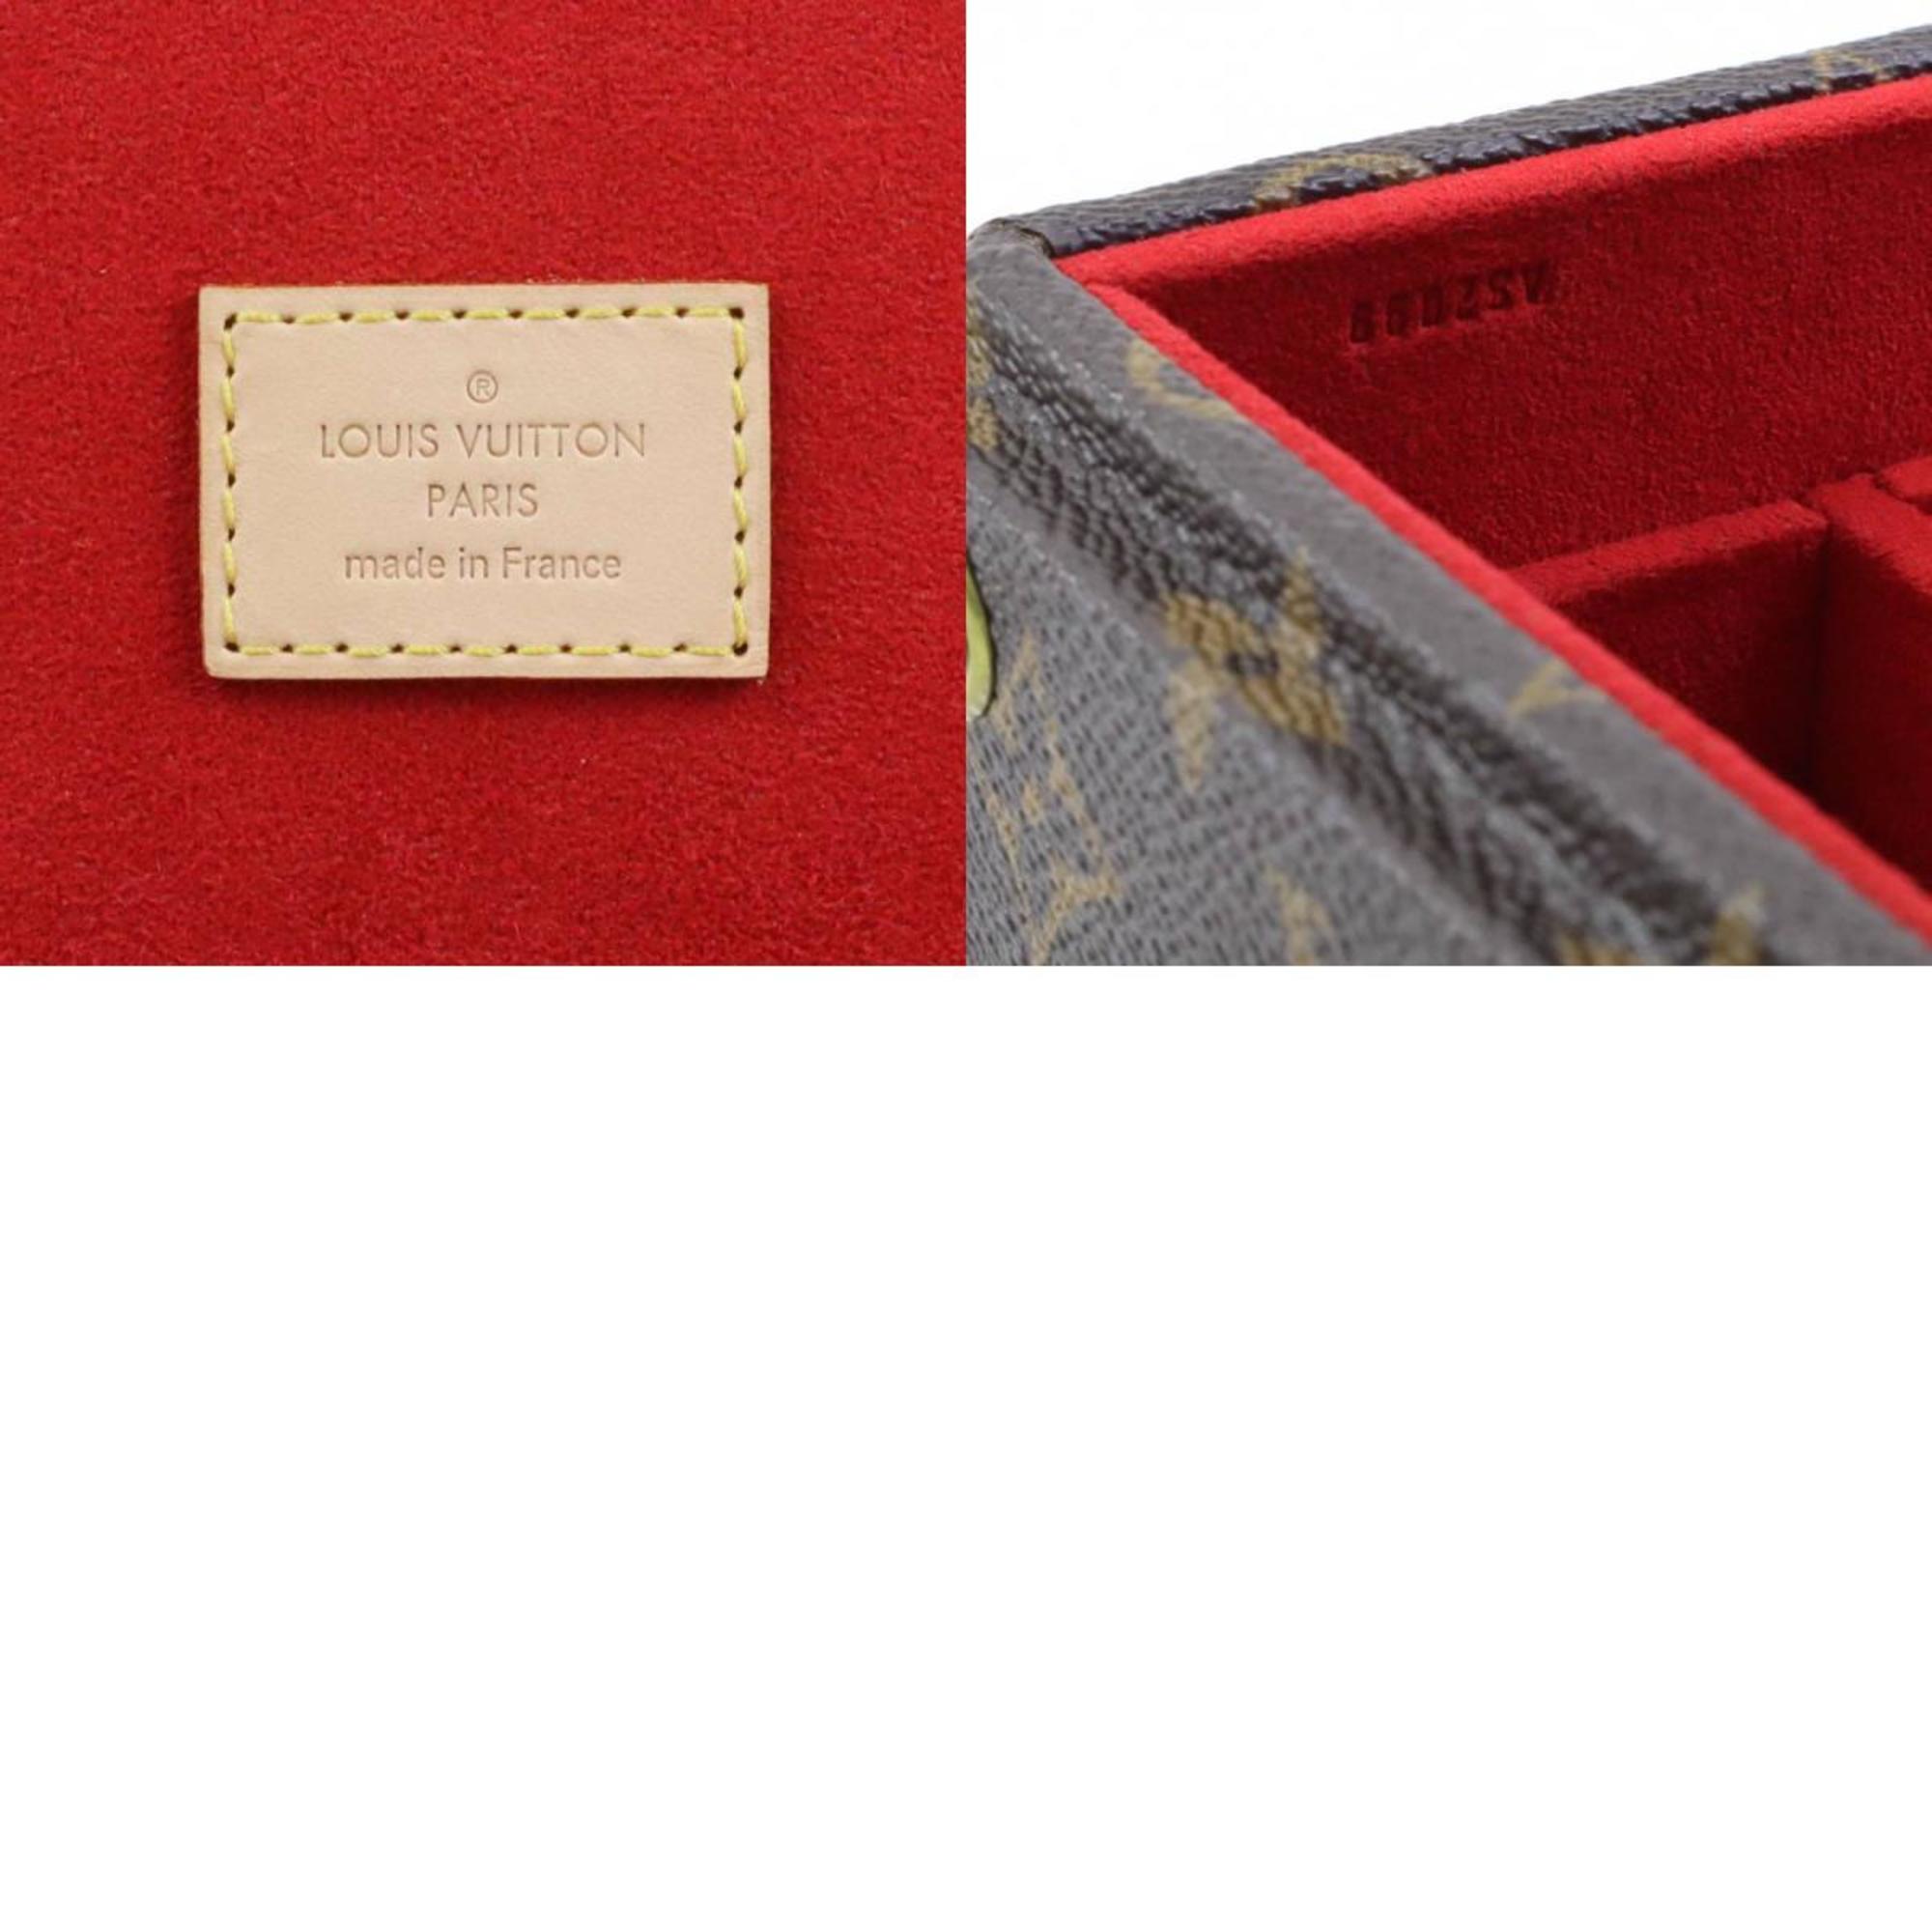 LOUIS VUITTON Jewelry Box Case Monogram Coffret Canvas Brown Unisex M13513